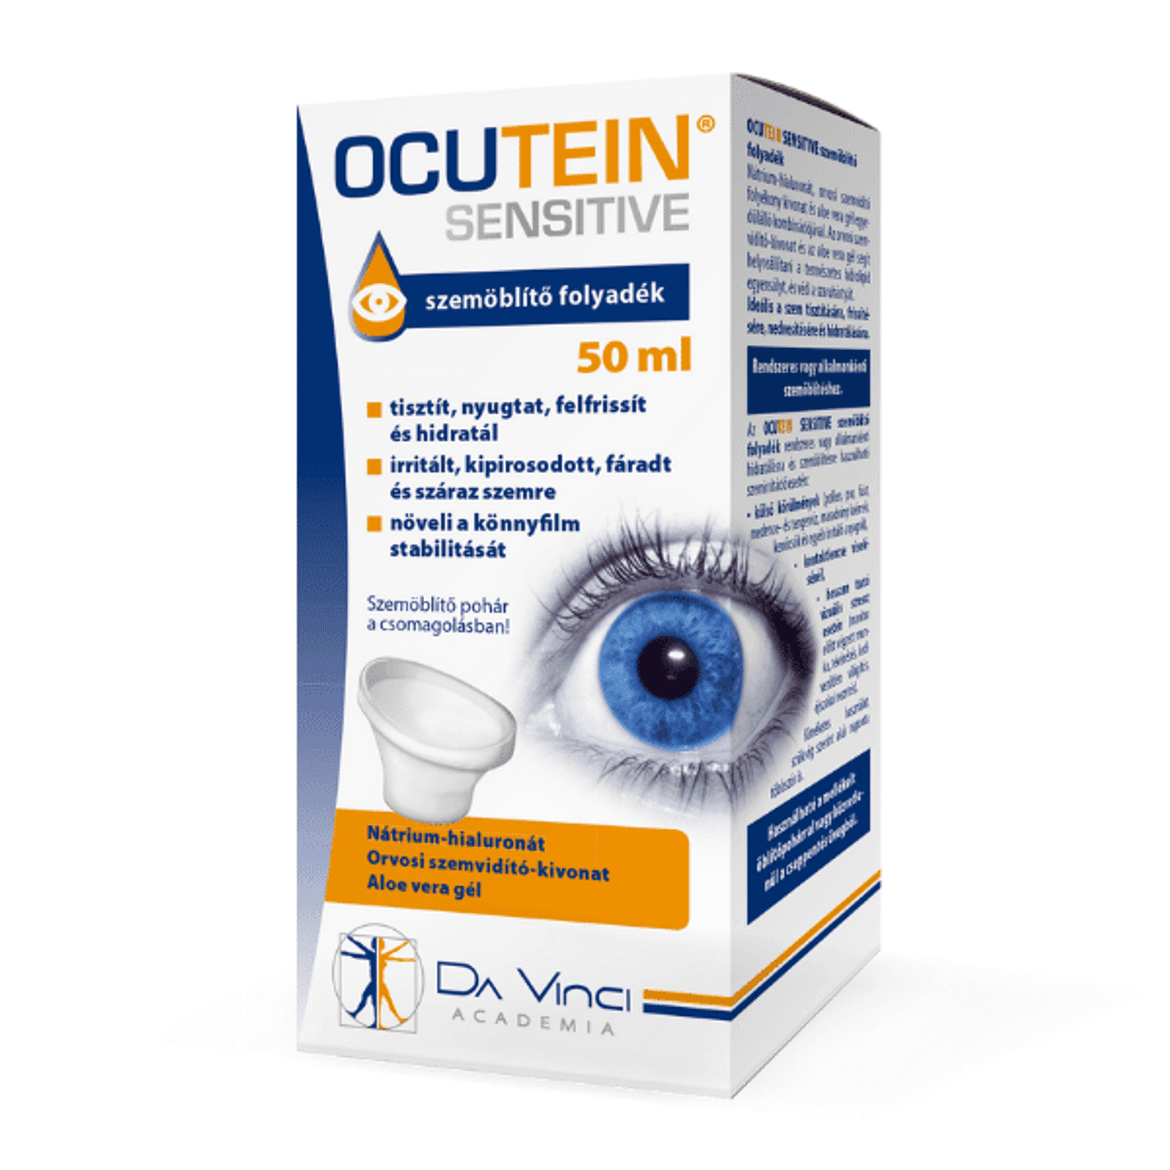 Ocutein Sensitive szemöblítő folyadék